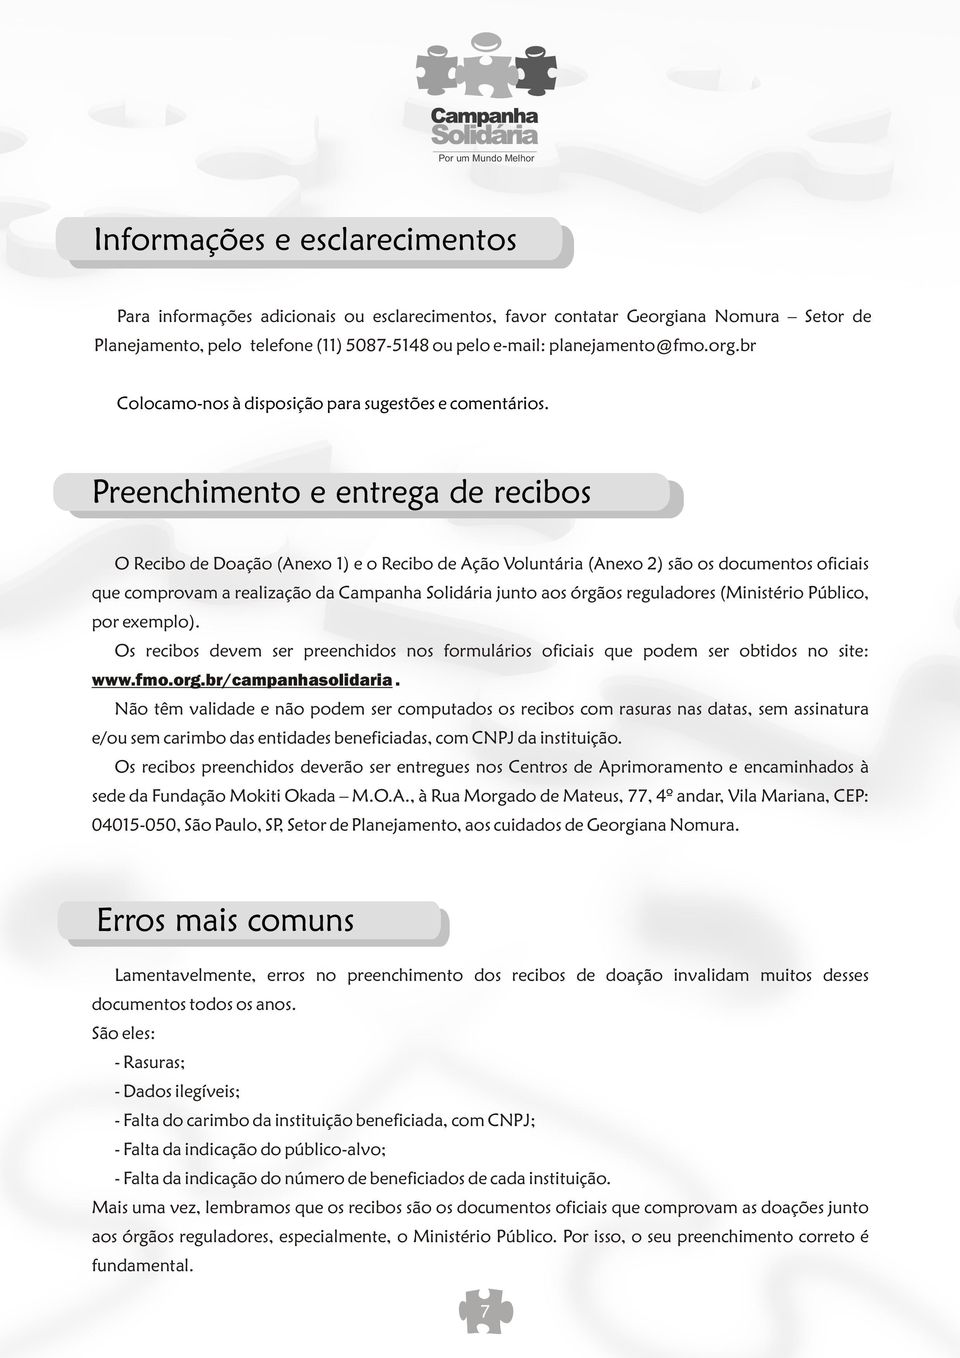 reguladores (Ministério Público, por exemplo). Os recibos devem ser preenchidos nos formulários oficiais que podem ser obtidos no site: www.fmo.org.br/campanhasolidaria.